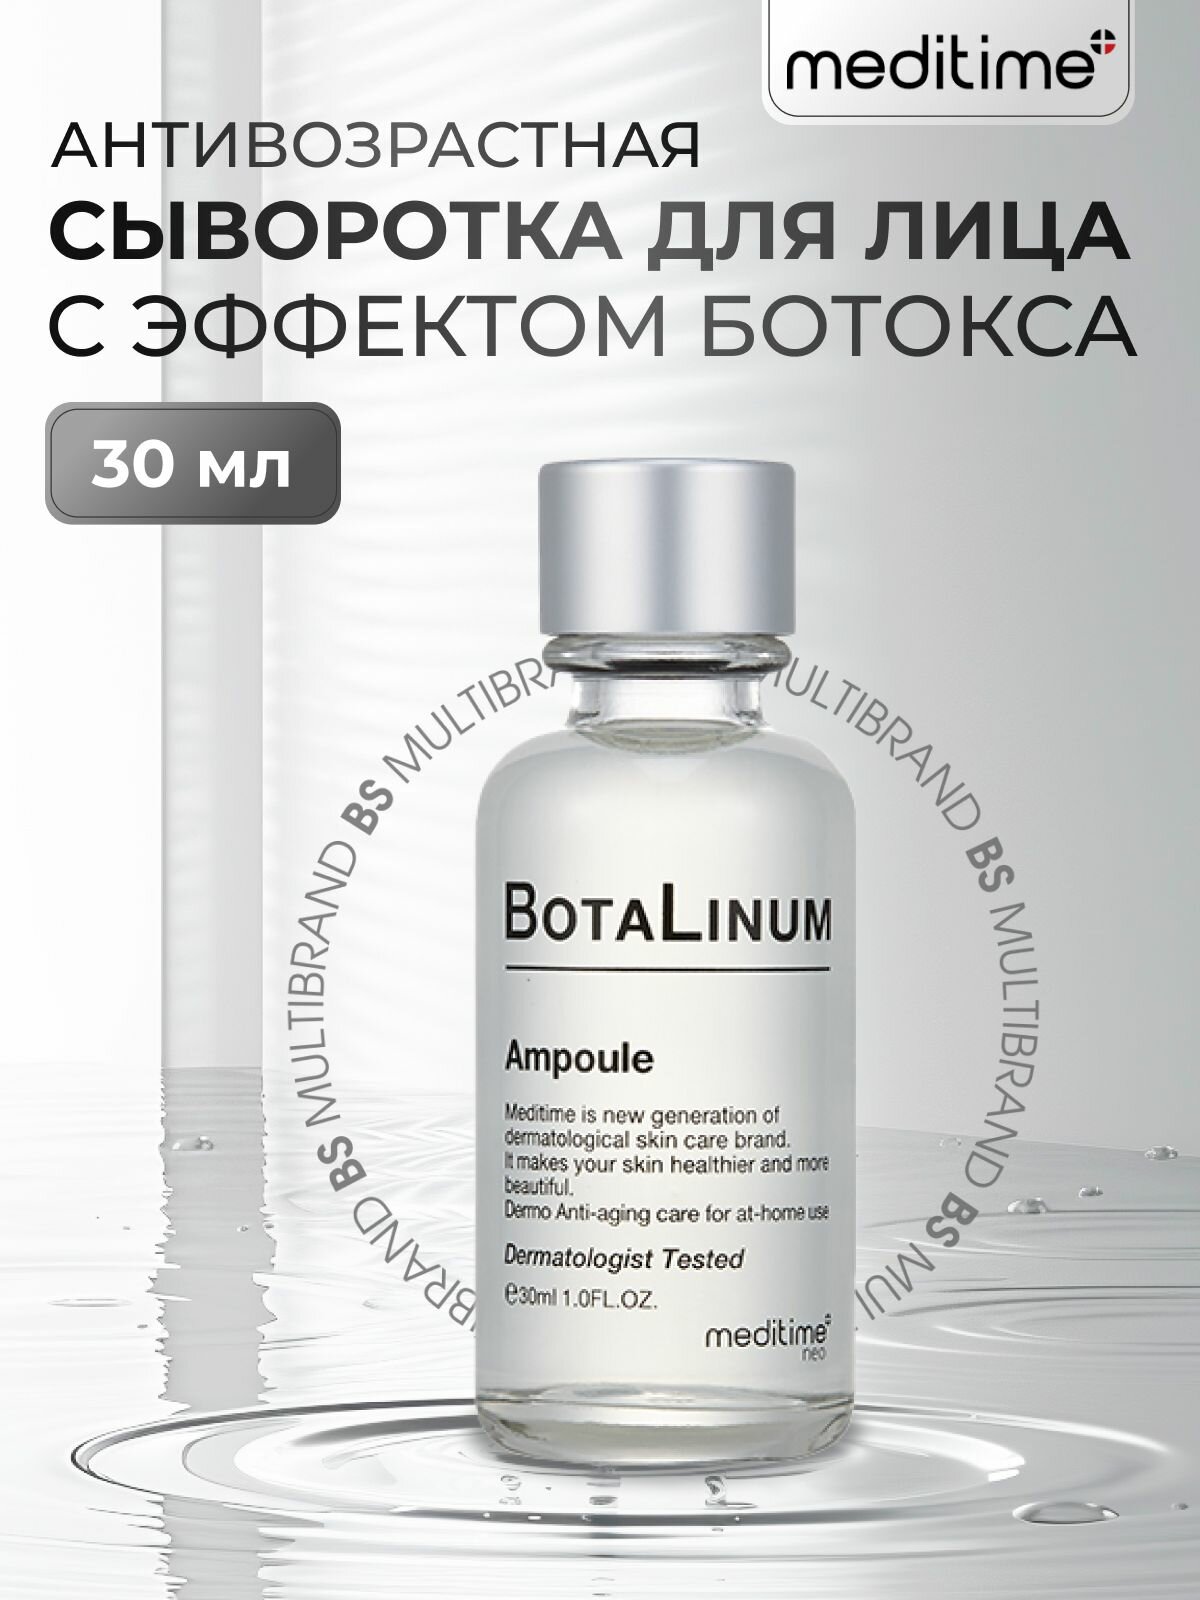 Meditime Антивозрастная сыворотка для лица с эффектом ботокса Meditime NEO Botalinum Ampoule, 30мл